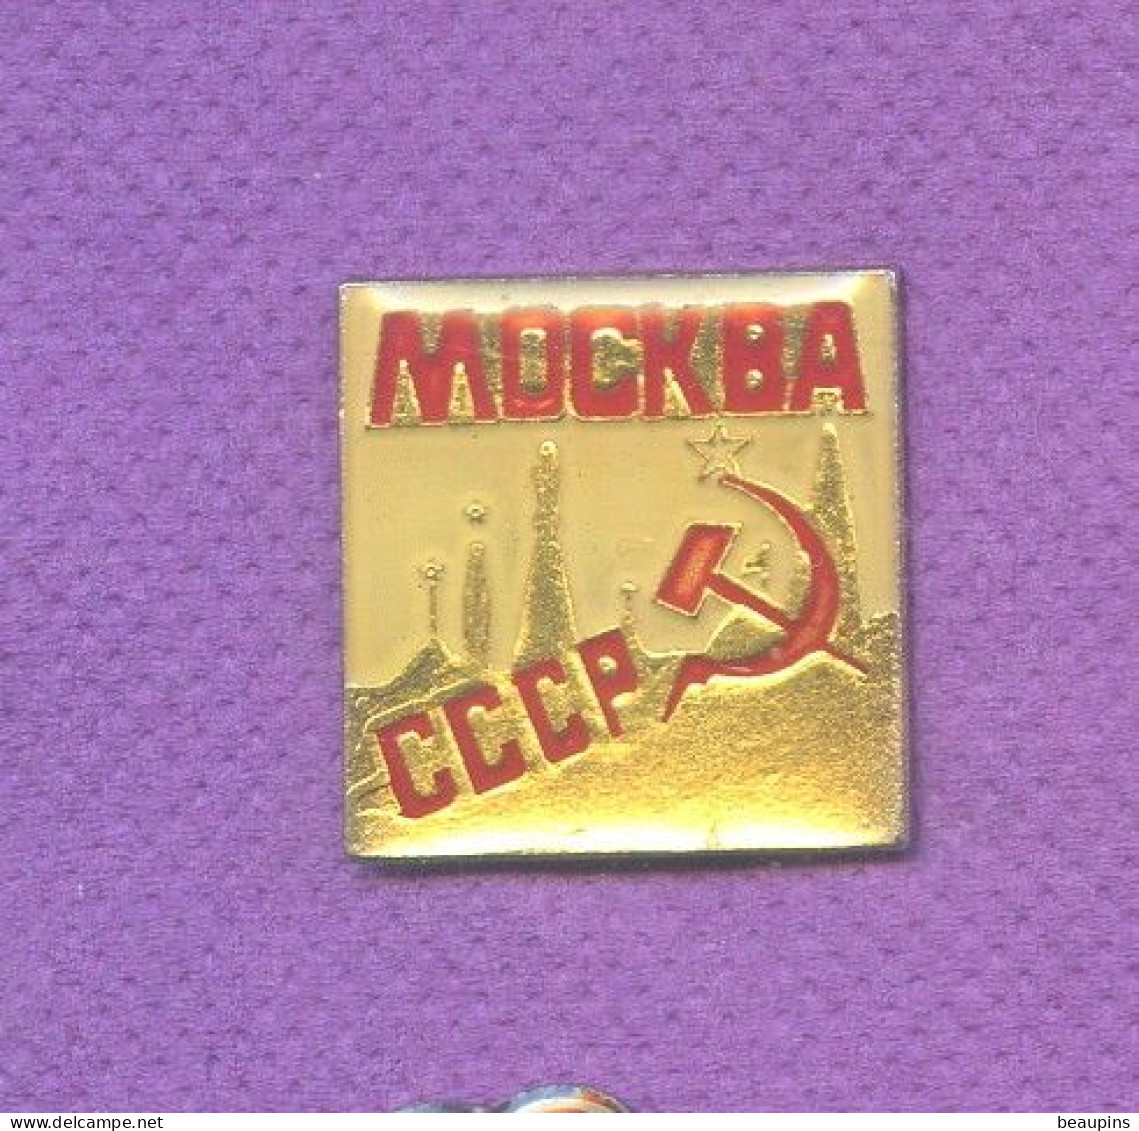 Rare Pins Russie Urss Cccp Faucille Marteau Politique N329 - Administrations